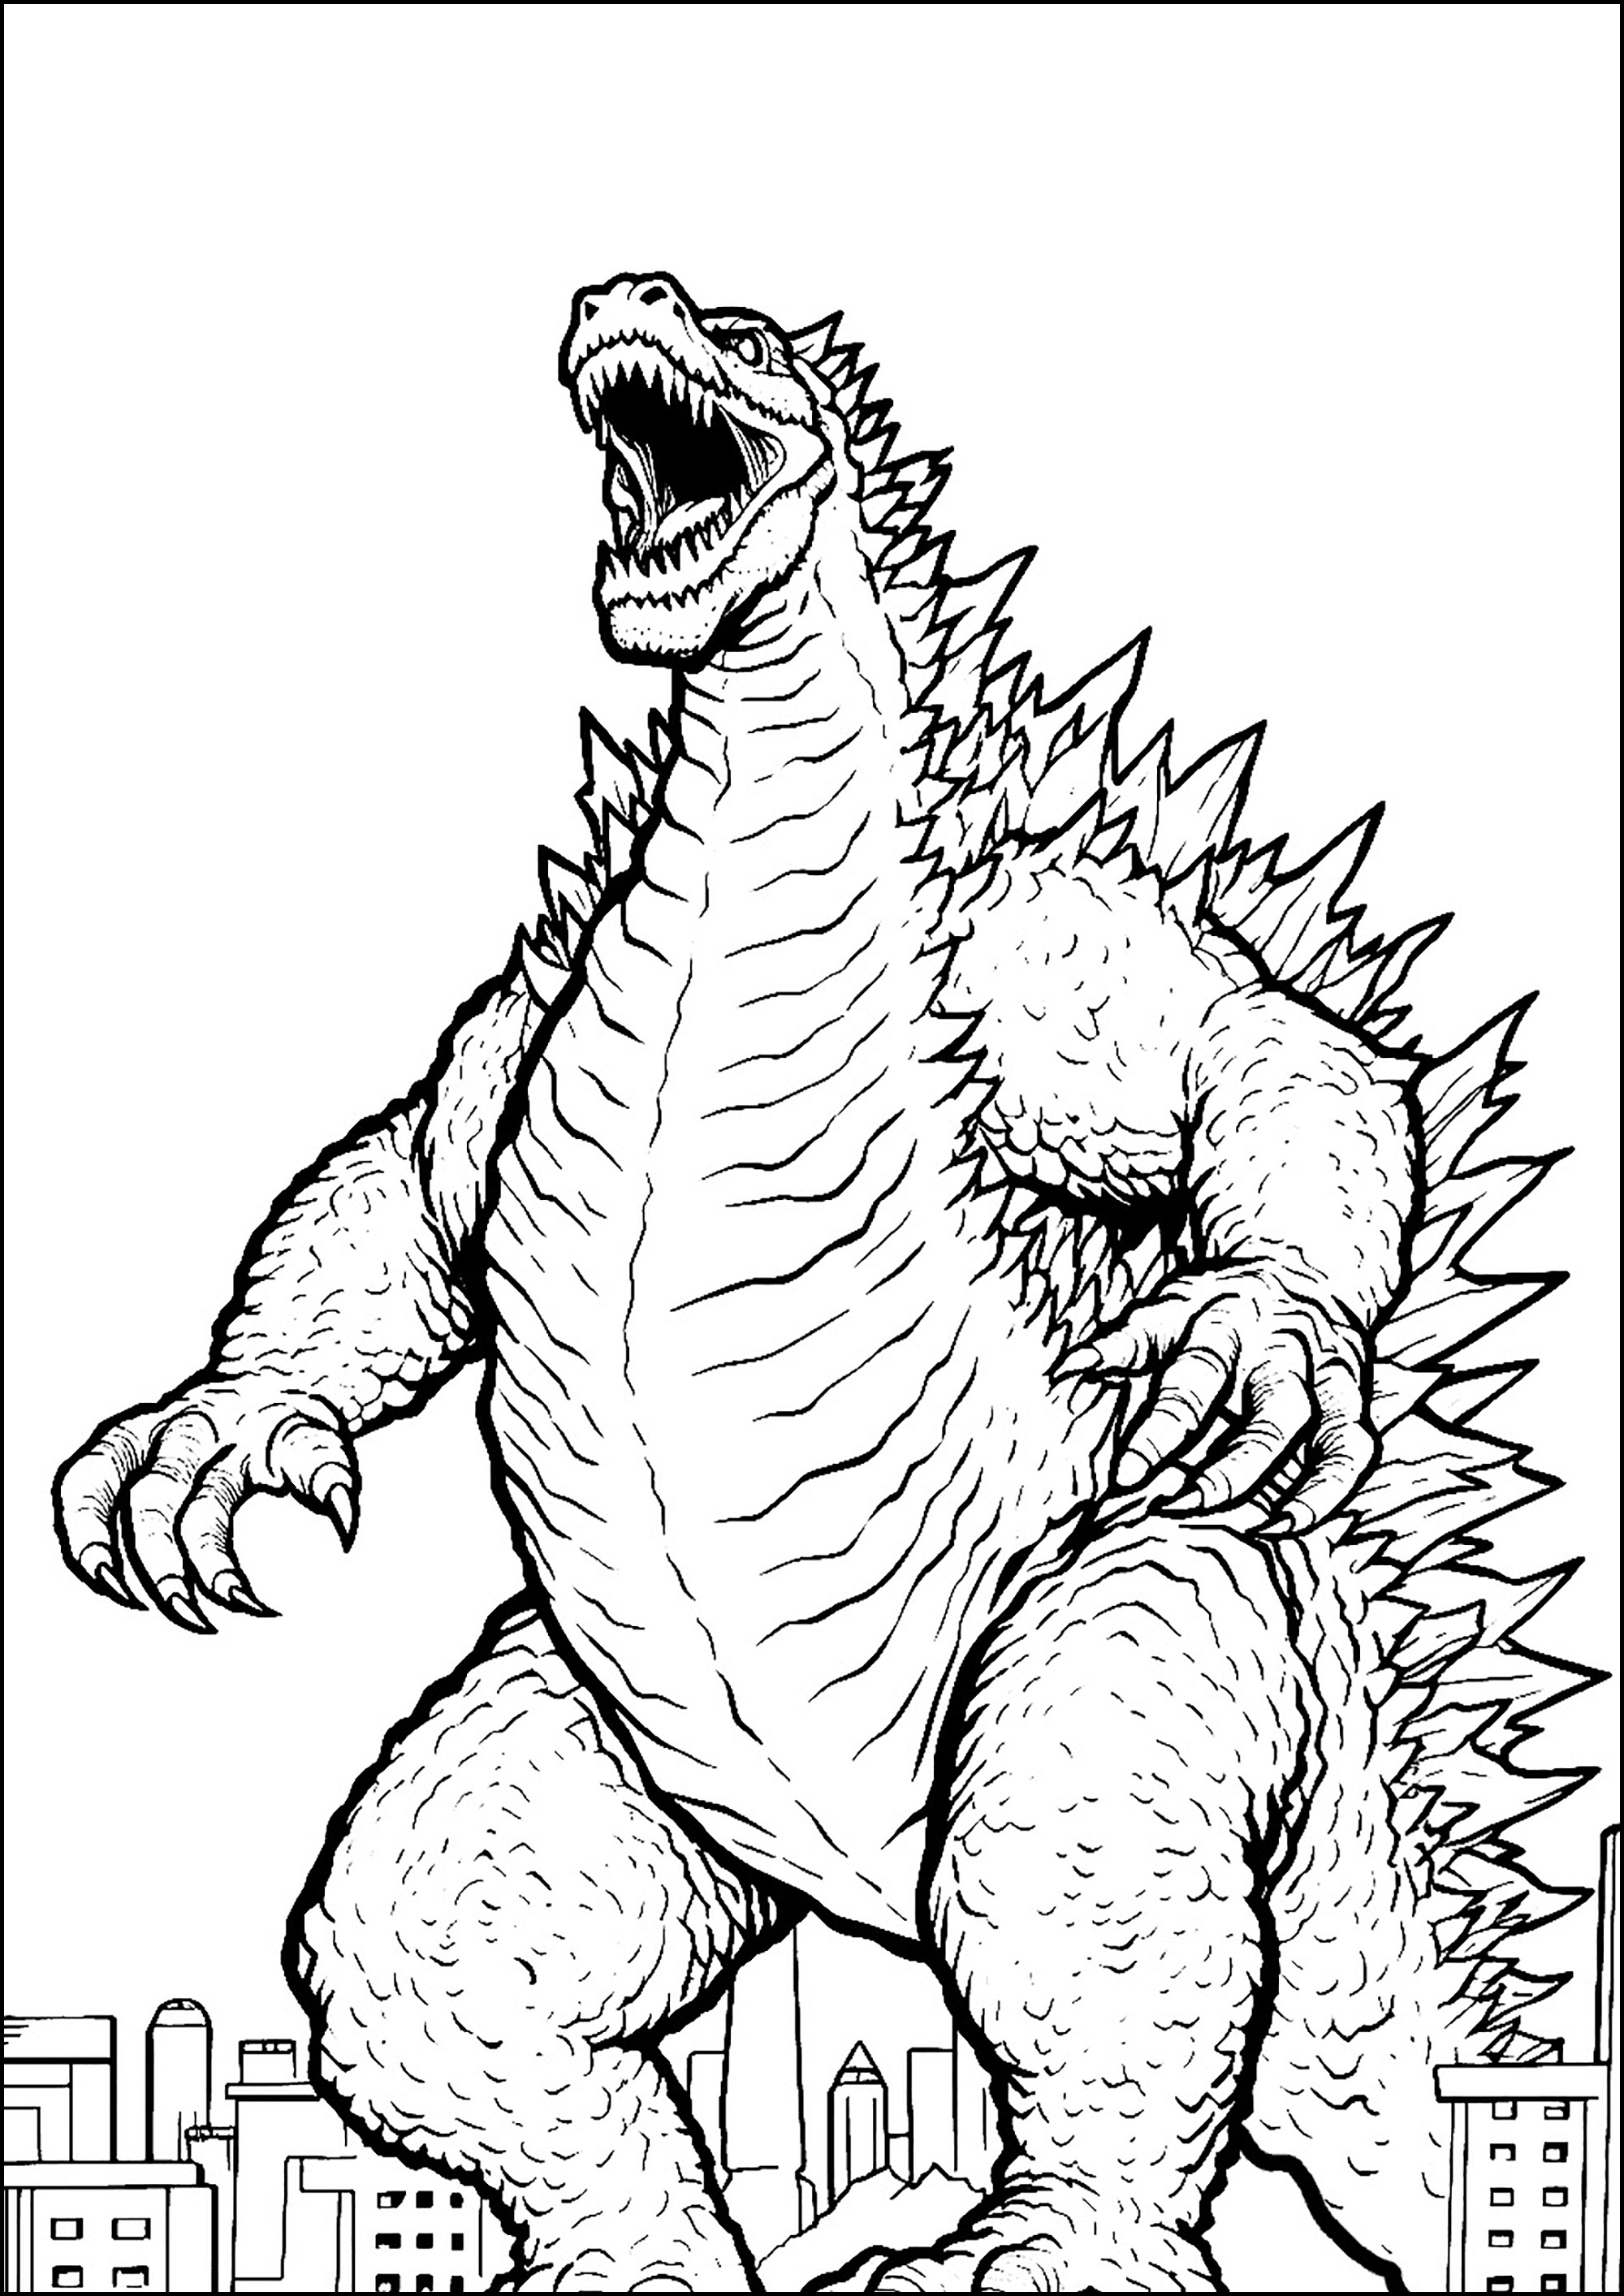 L'énorme Godzilla, très énervé. Godzilla est « un croisement entre un gorille et une baleine » en référence à sa taille, sa force et ses origines aquatiques